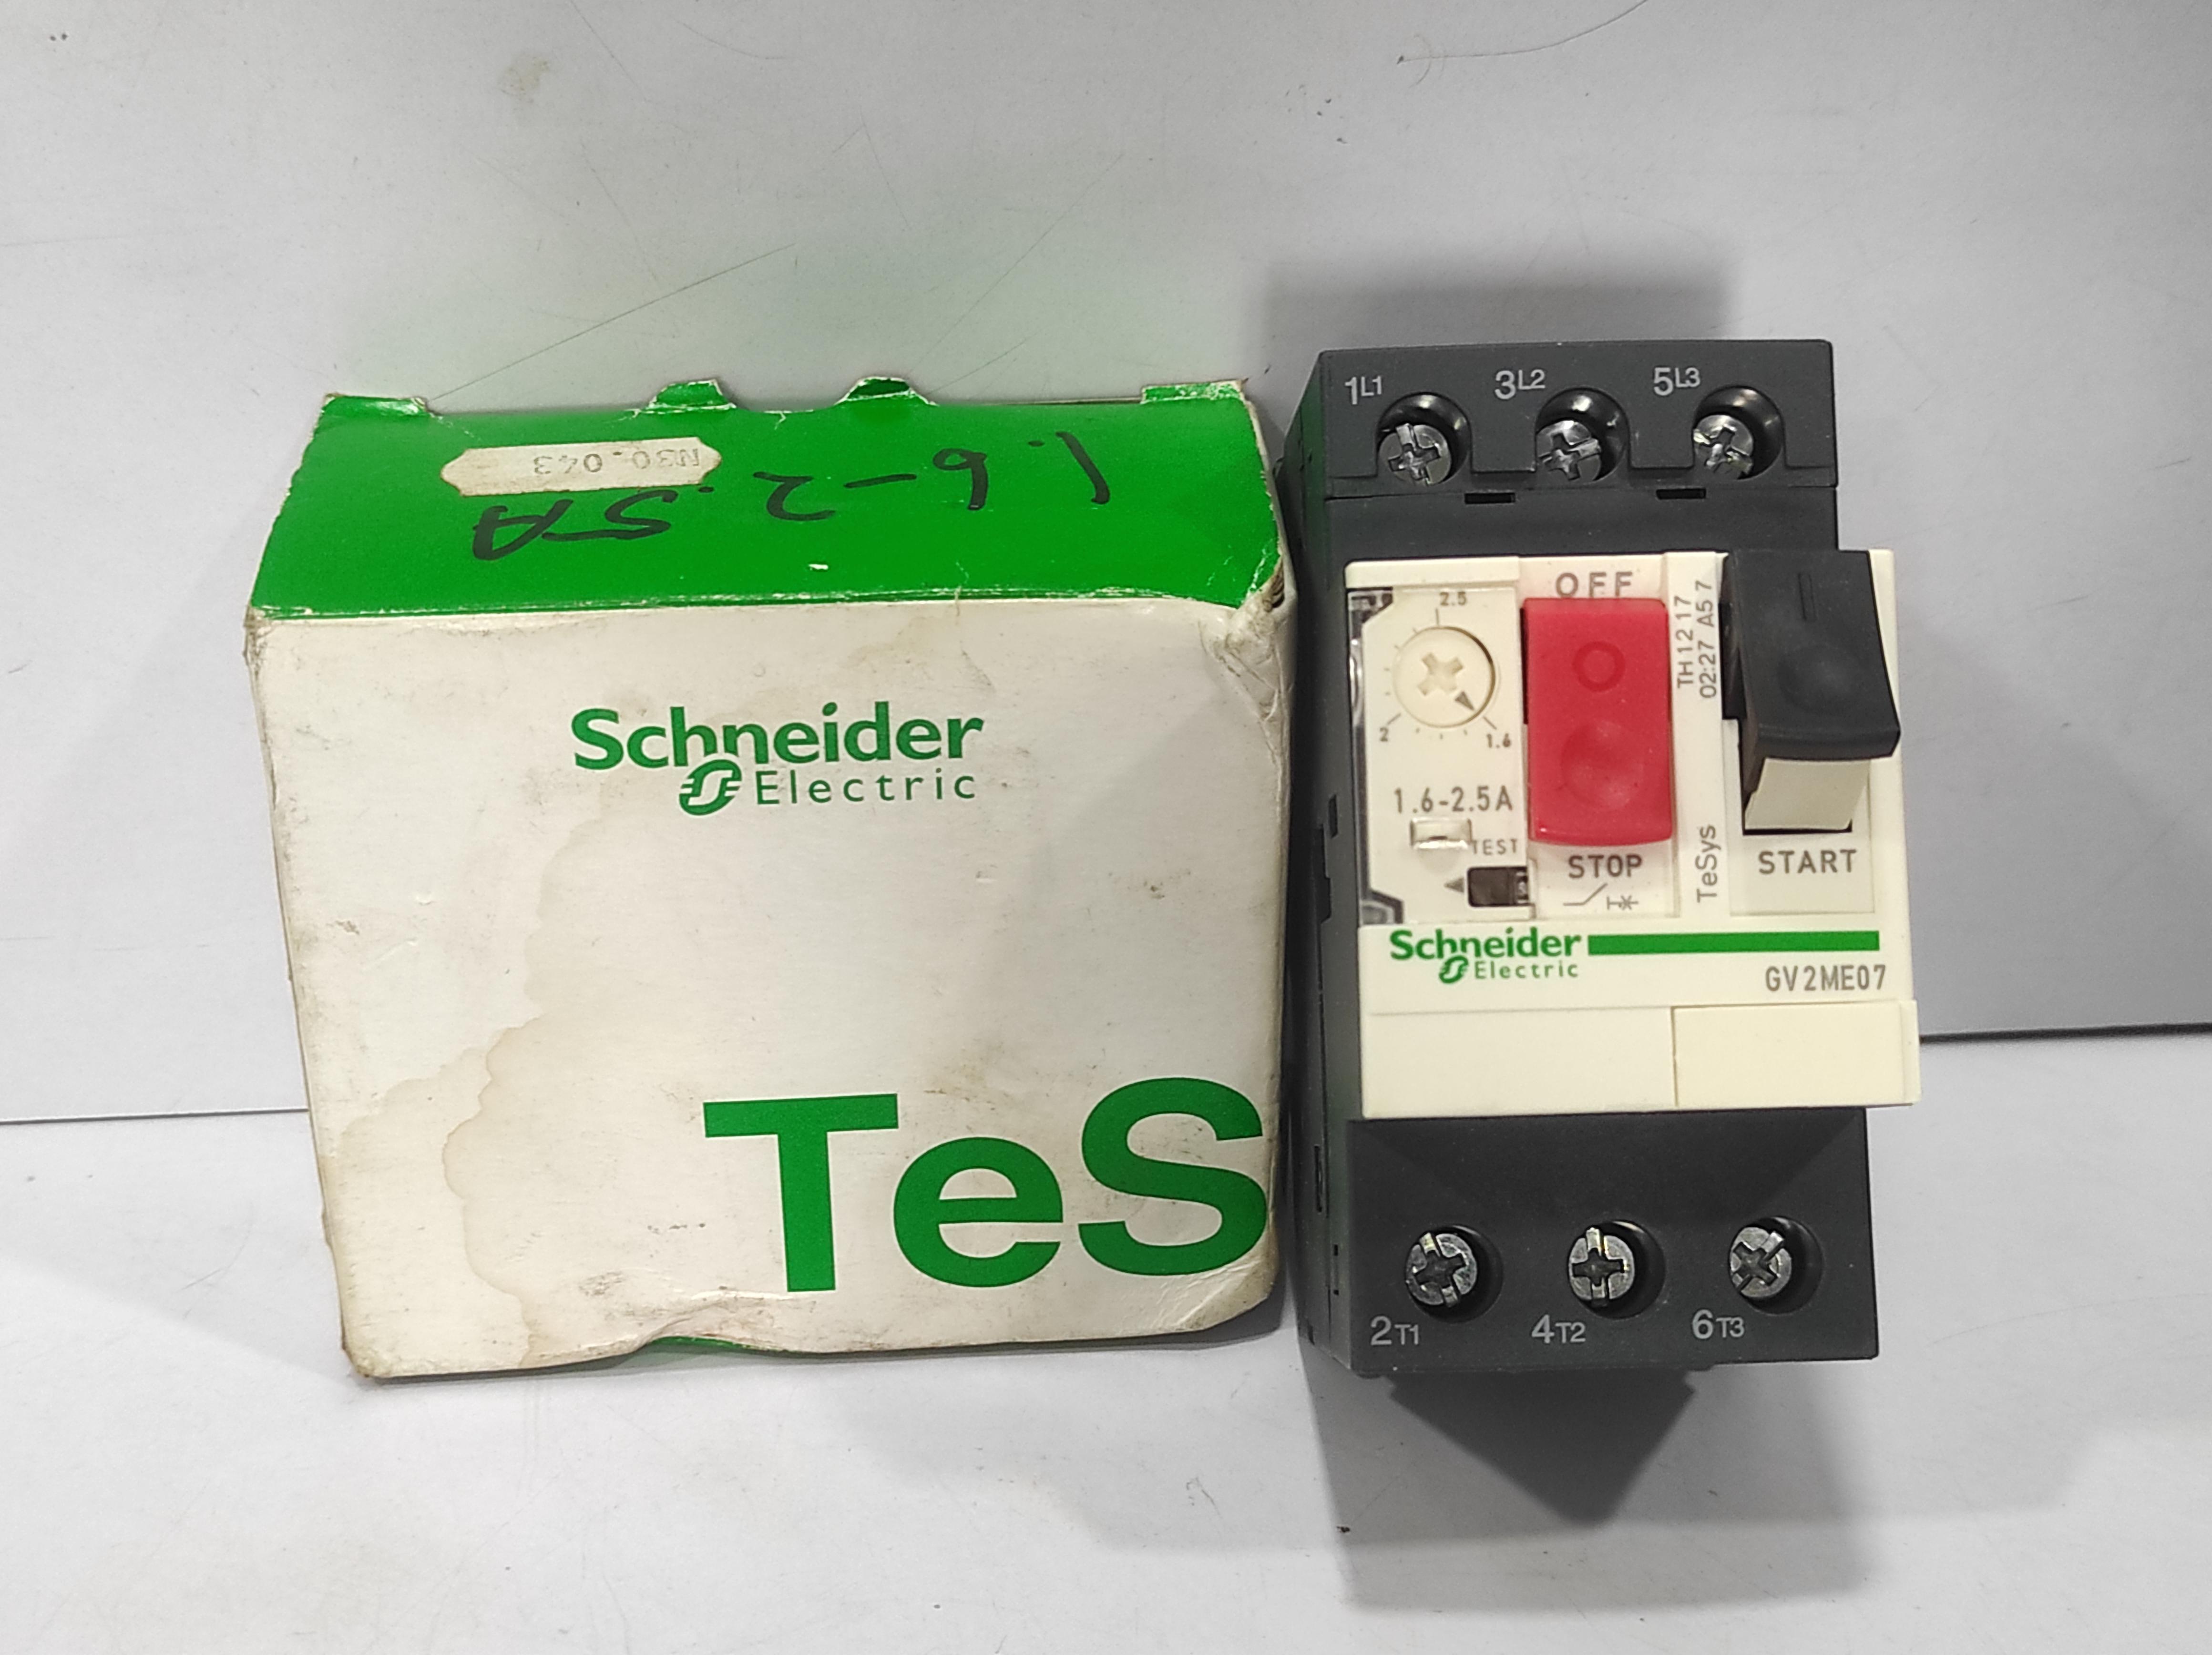 Schneider GV2 ME07 Motor Circuit Breaker 1.6-2.5A